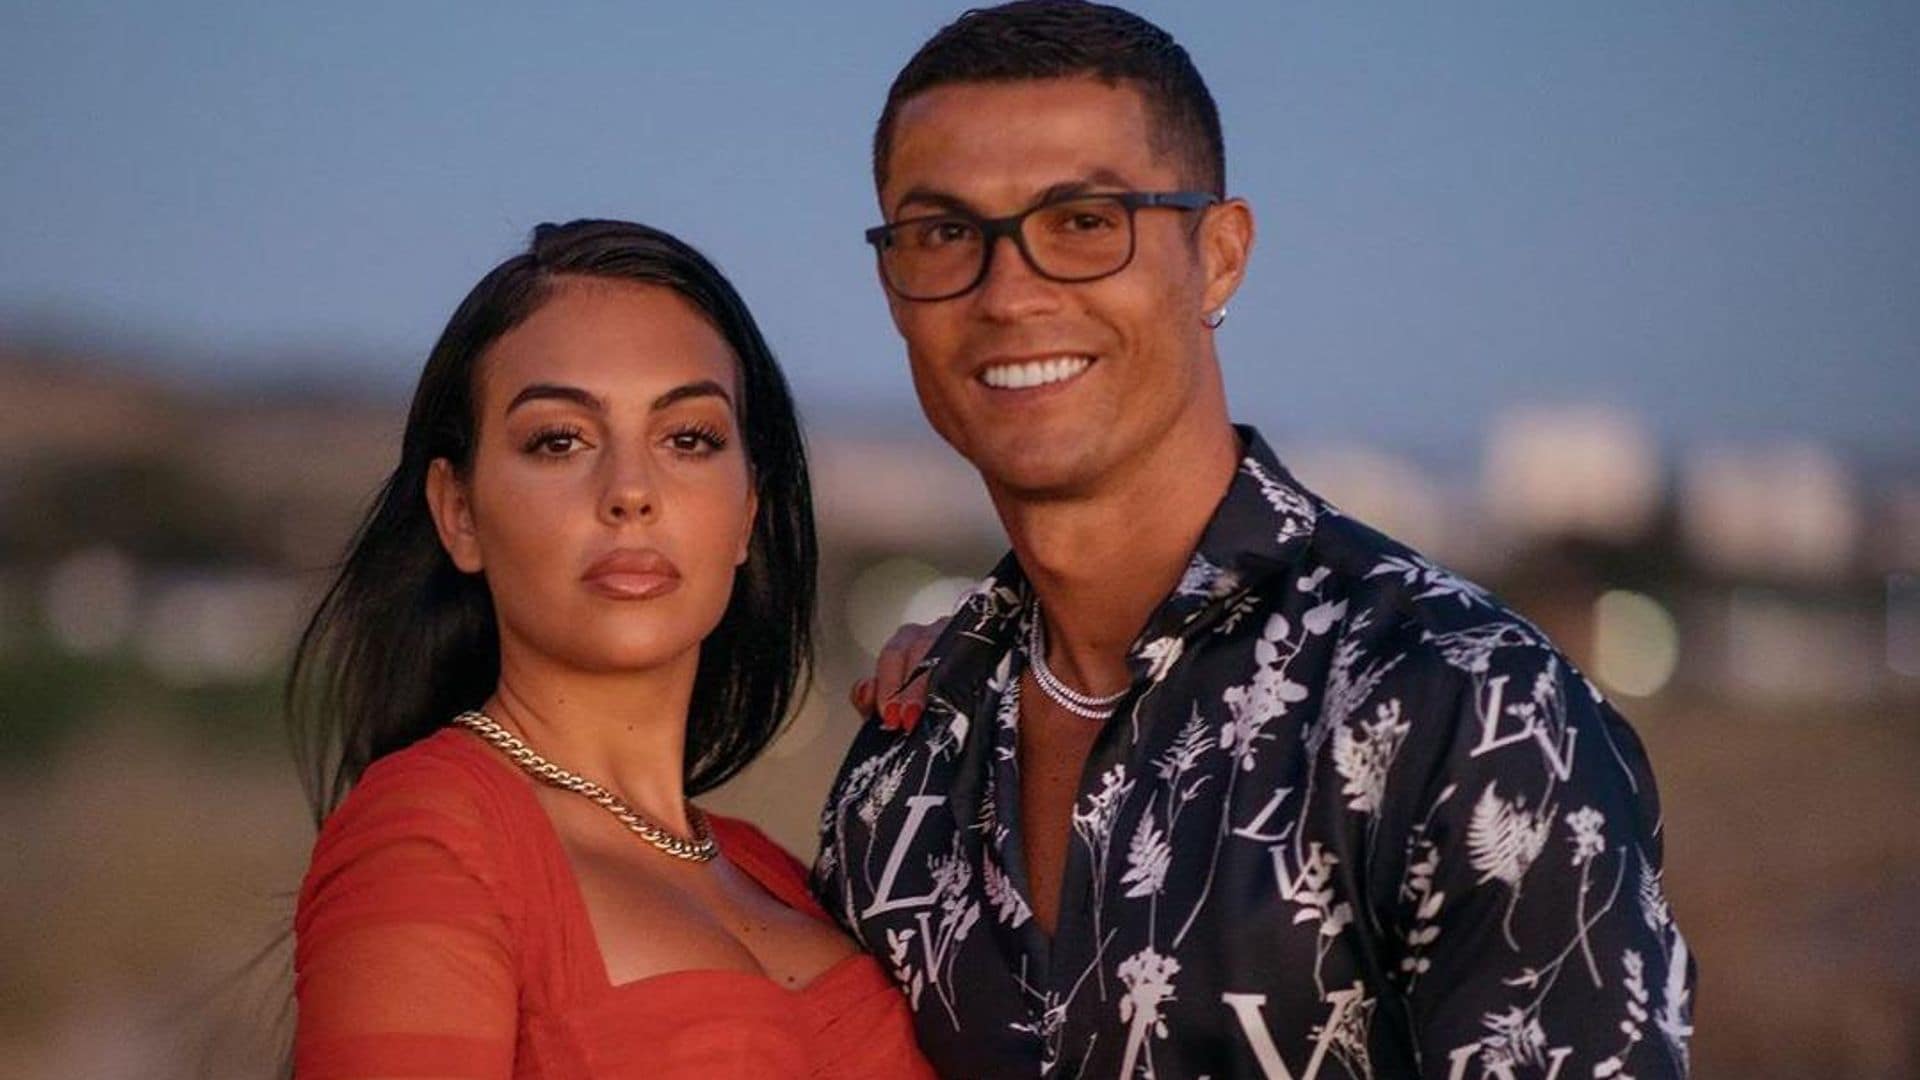 ¿Campanas de boda? Las pistas que sugieren que Georgina Rodríguez y Cristiano Ronaldo están comprometidos